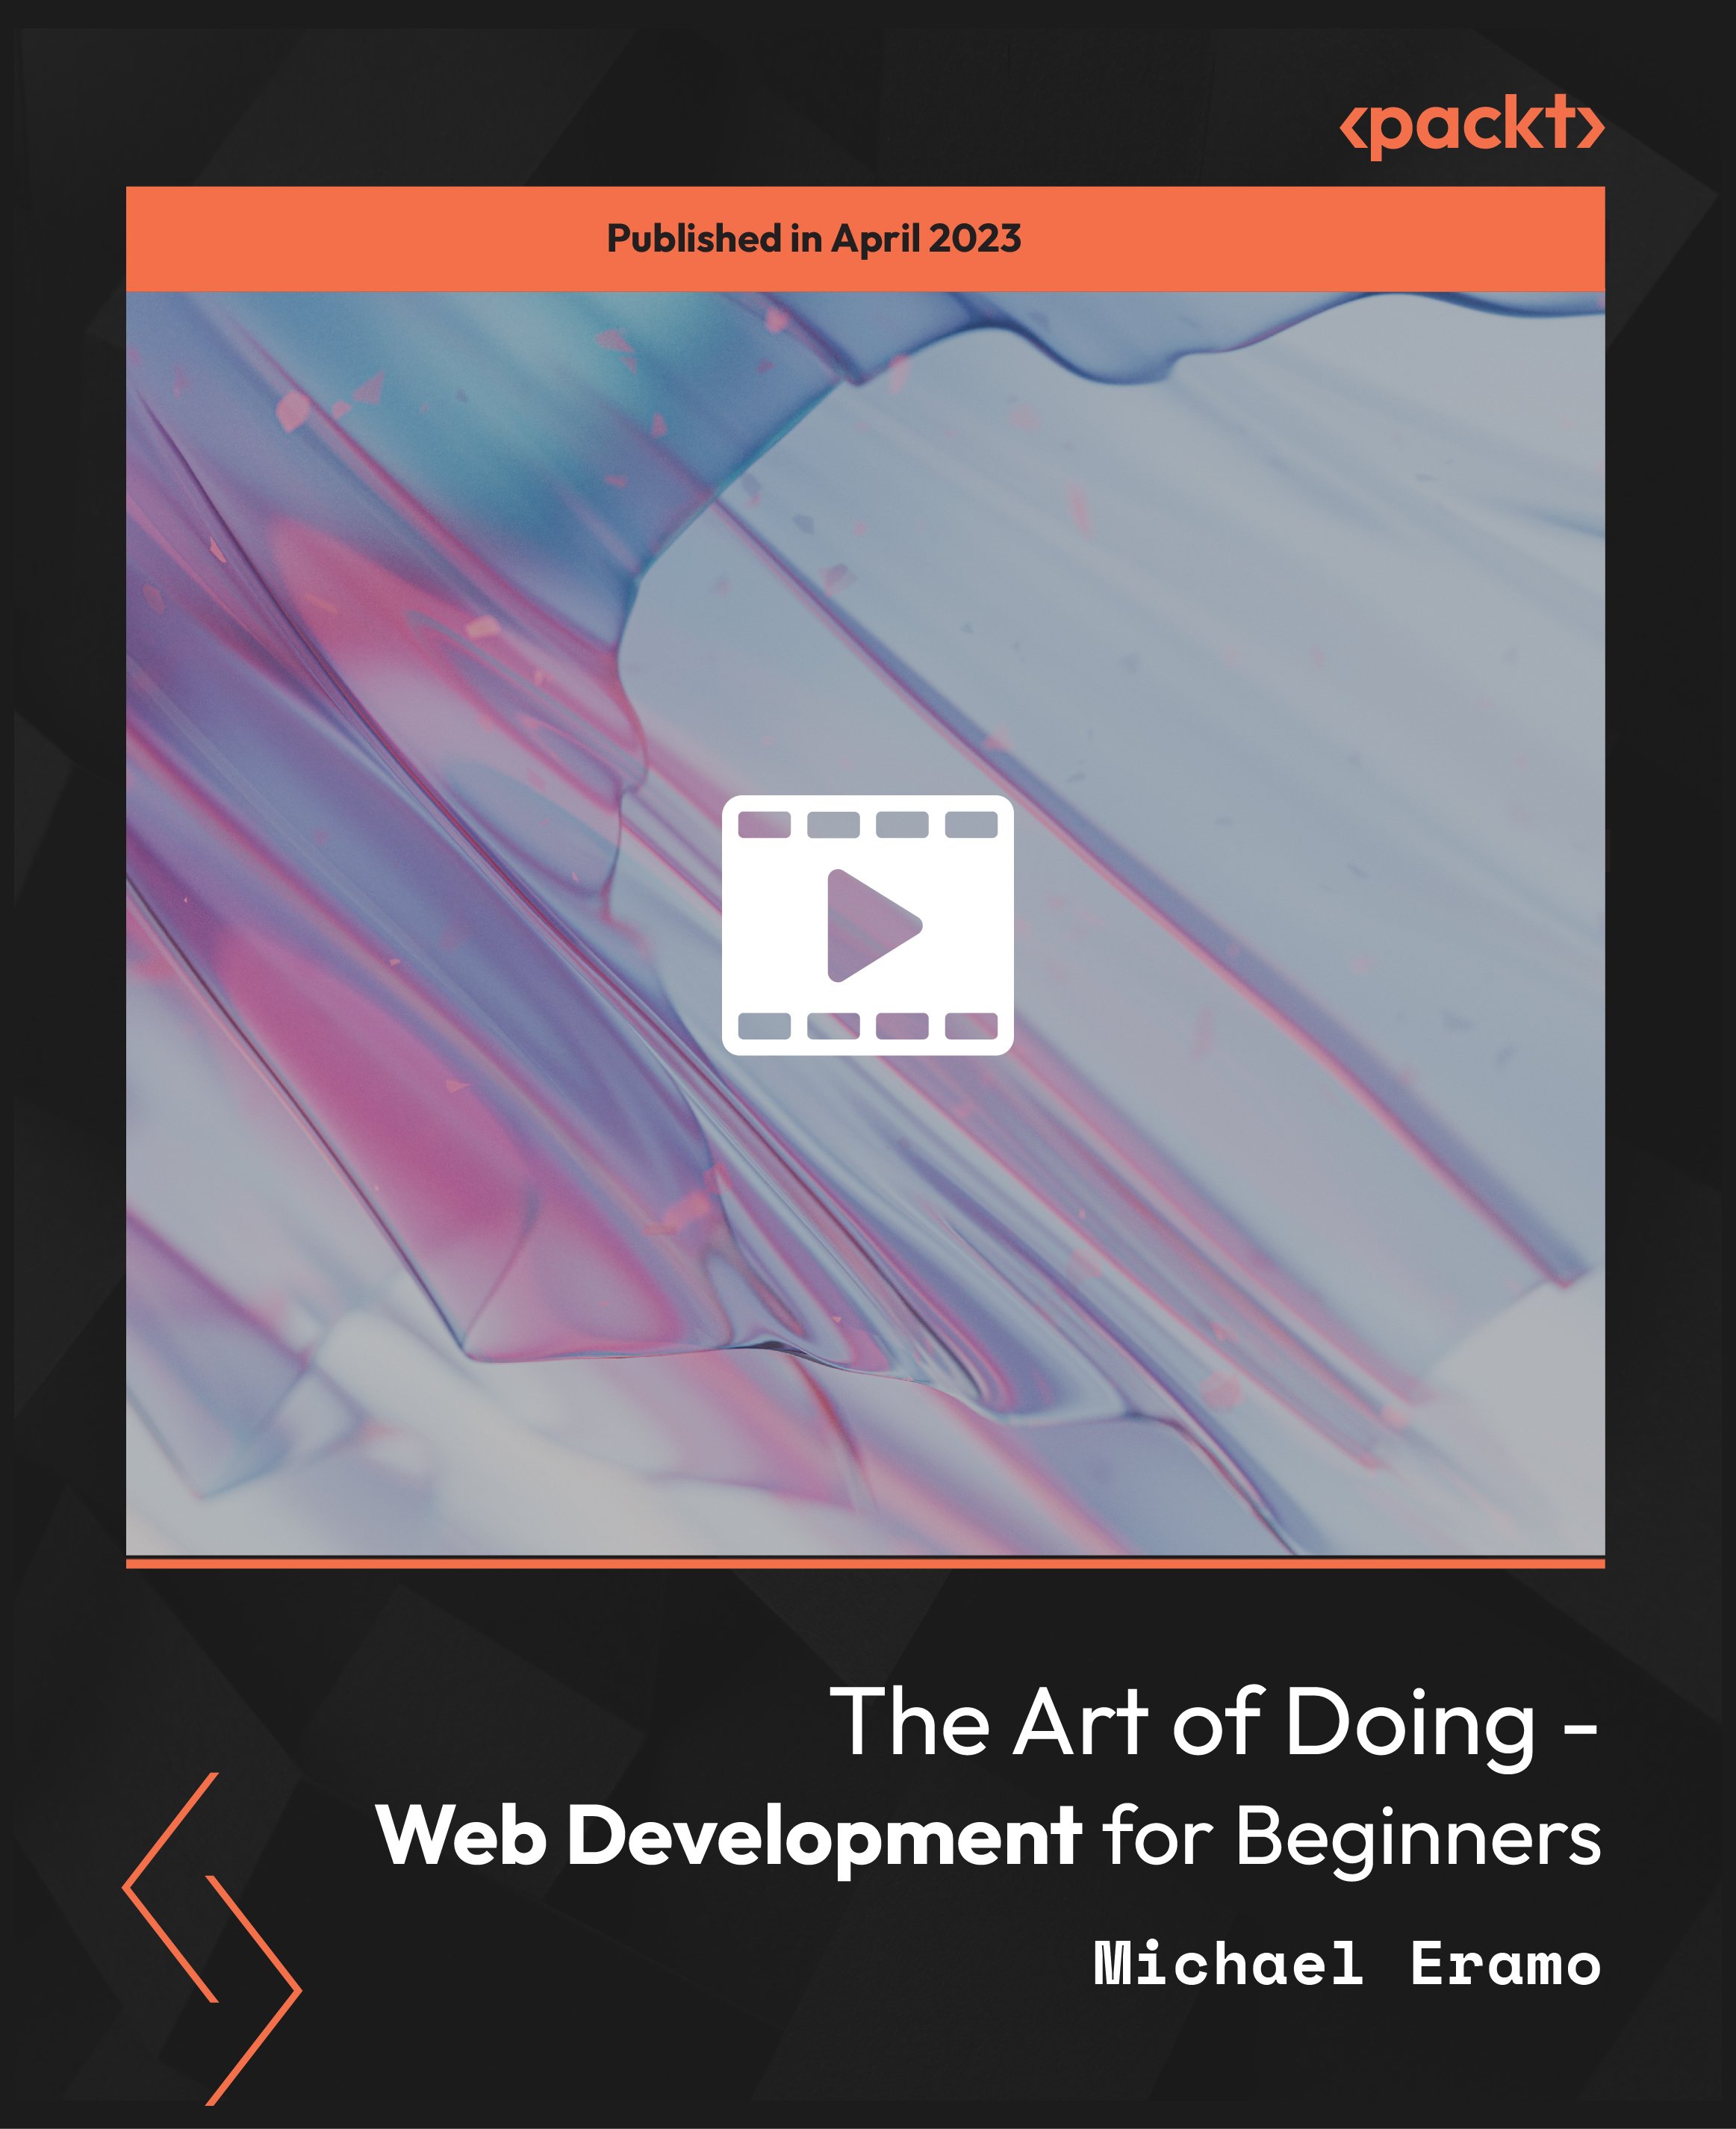 The Art of Doing - Web Development for Beginners